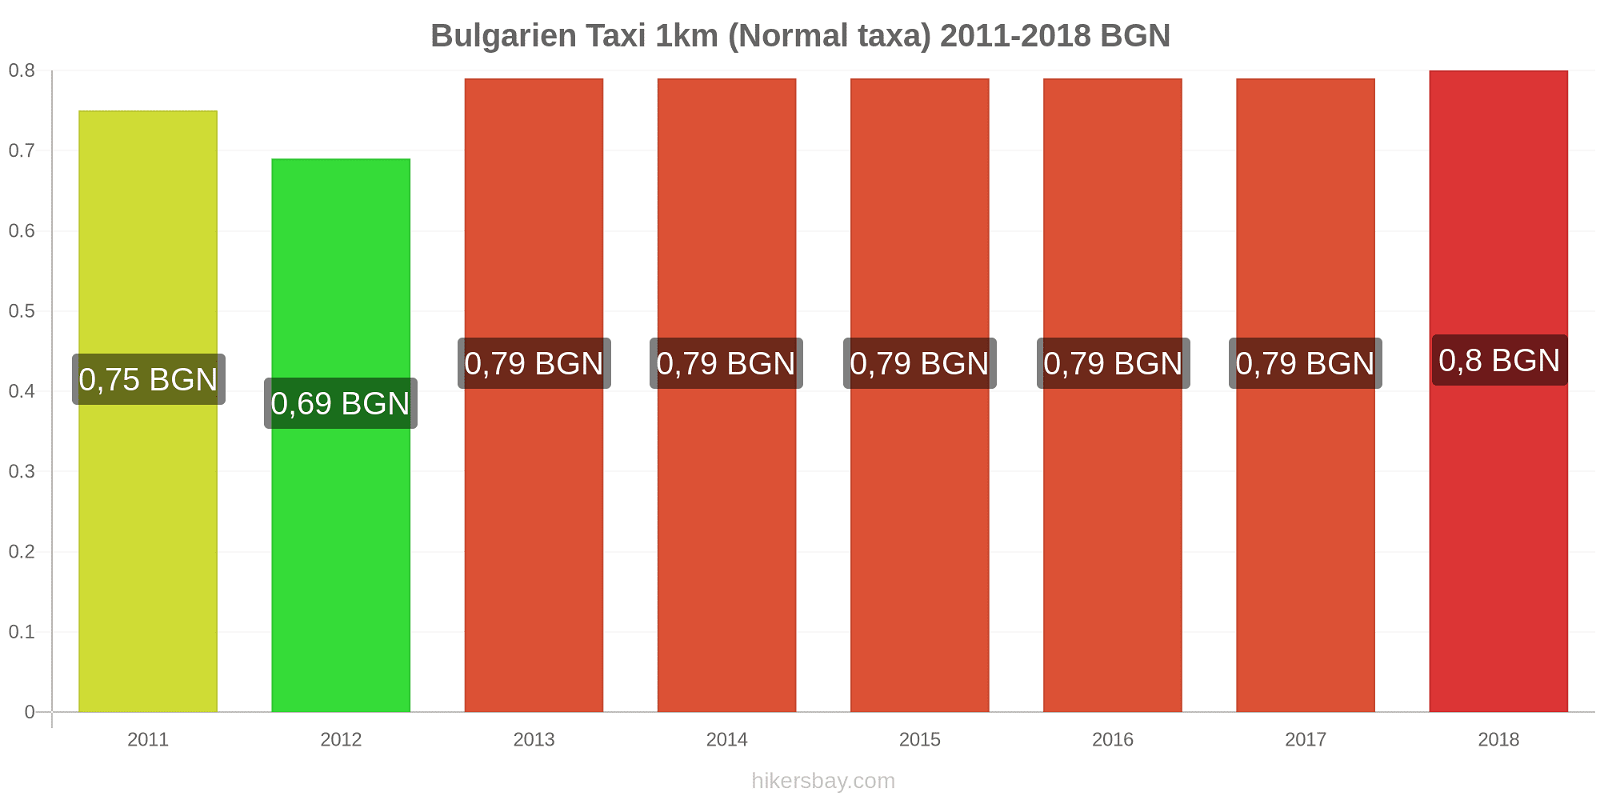 Bulgarien prisändringar Taxi 1km (Normal taxa) hikersbay.com